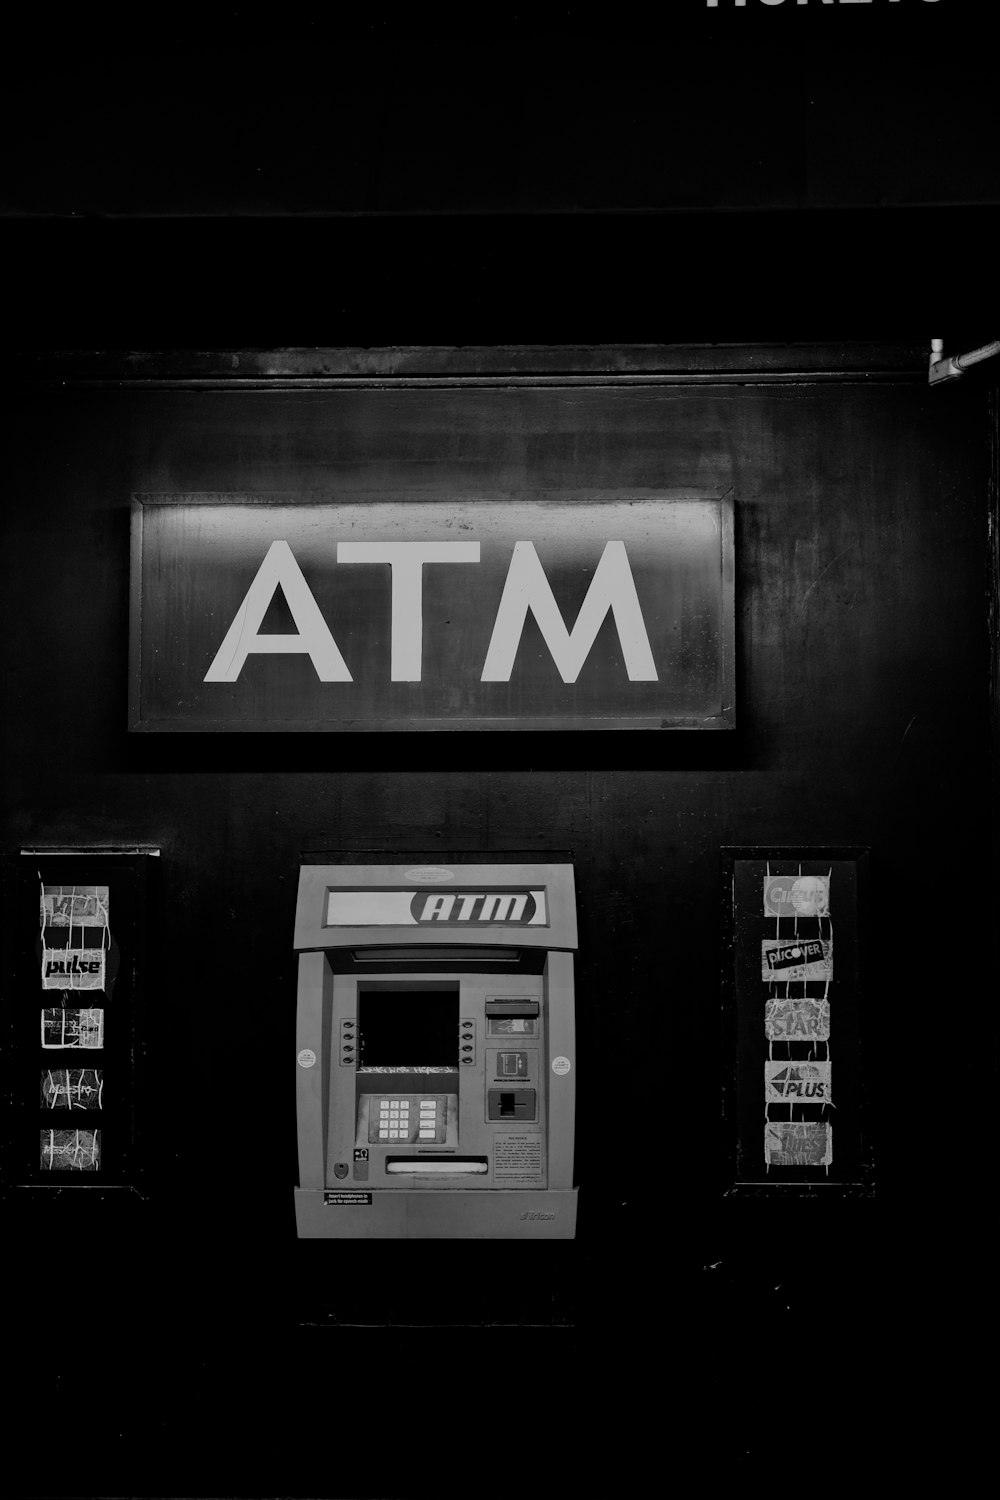 photo en niveaux de gris d’une machine ATM